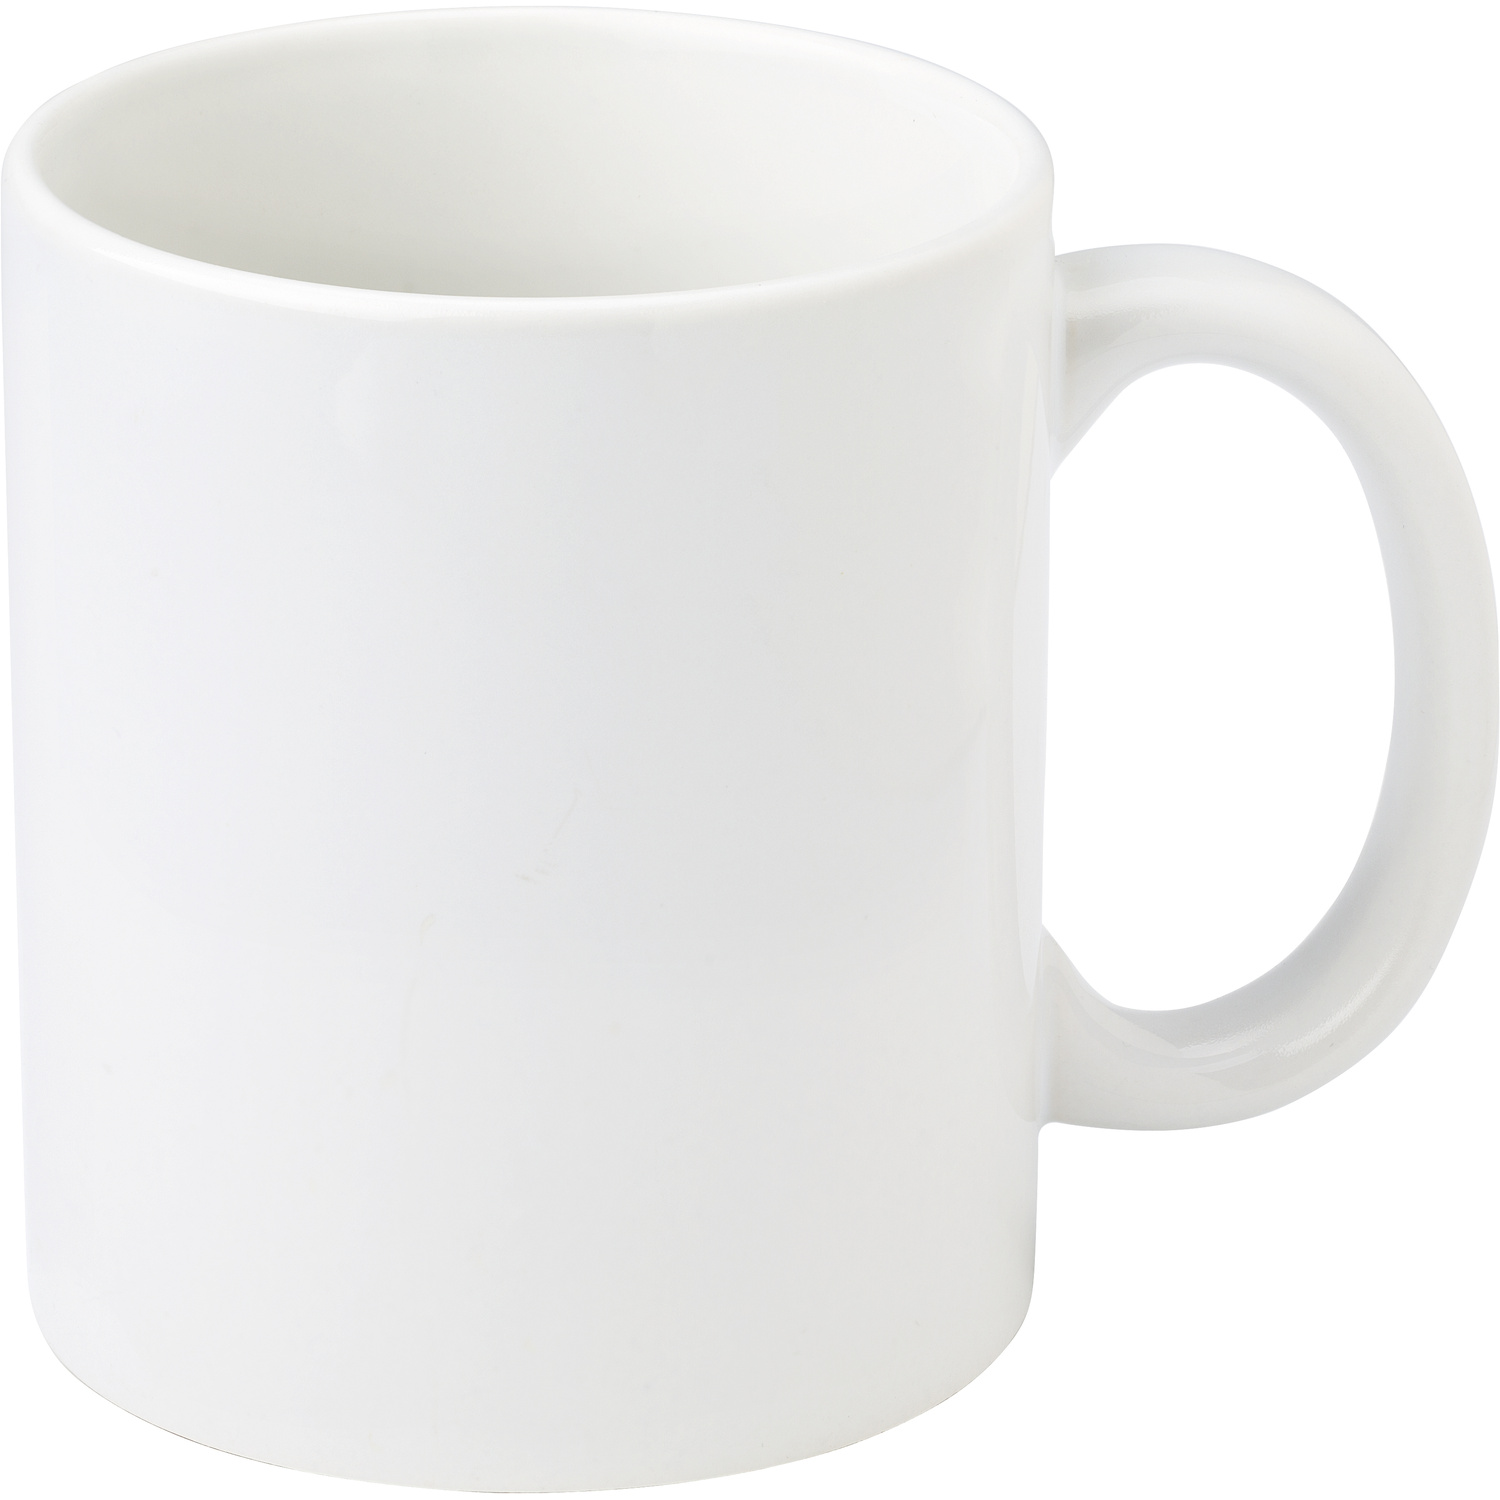 007462 002999999 3d090 frt pro01 fal - White mug (325ml)